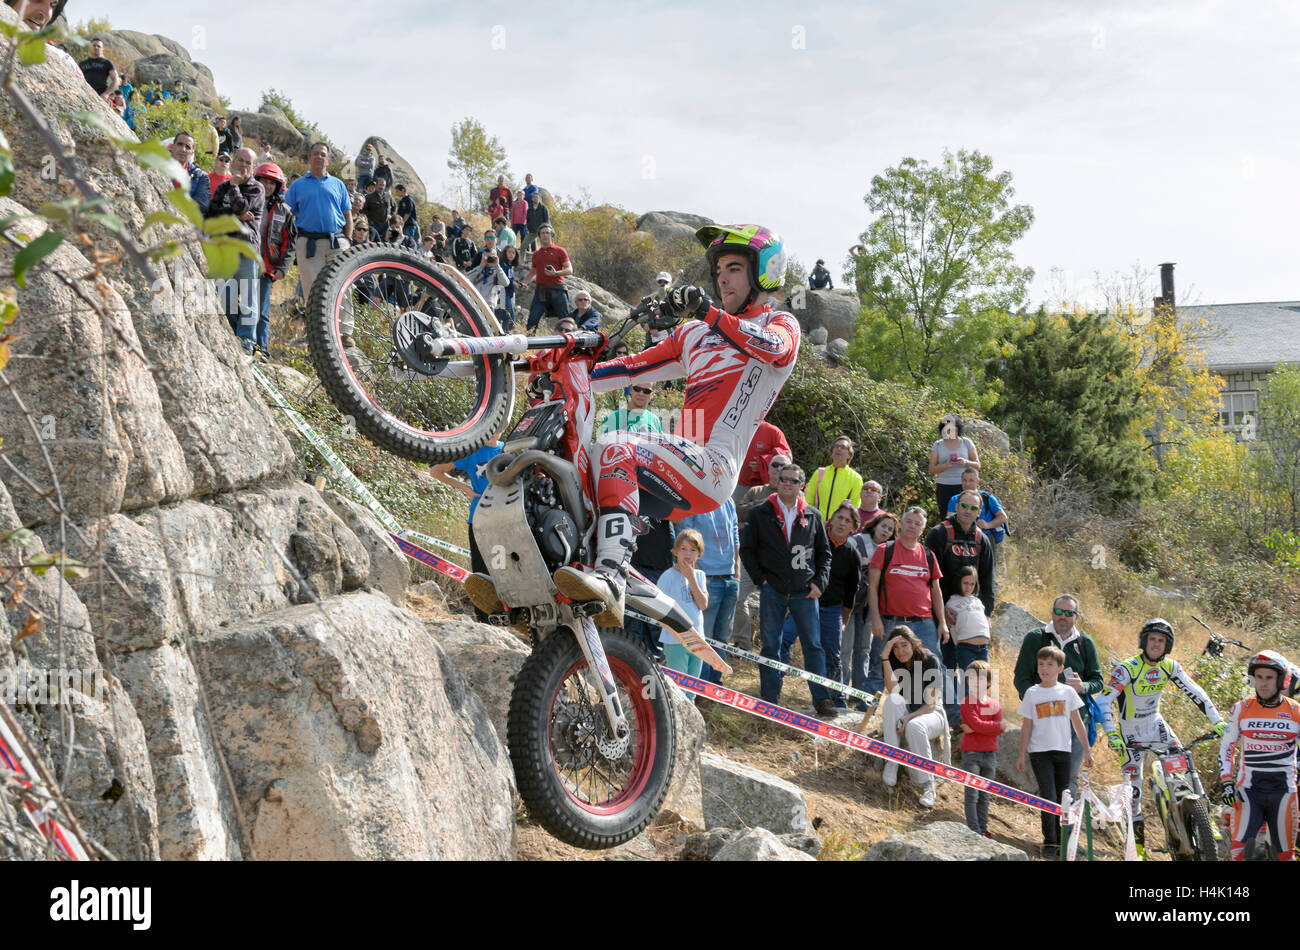 Valdemanco, Spanien 16. Oktober 2016: Motorradfahren. Trial Rennen. Spanien-Meisterschaft. Jorge Casales überholen ein Hindernis über Granitfelsen, in Valdemanco, am 16. Oktober 2016. Bildnachweis: Russet Apfel/Alamy Live News Stockfoto